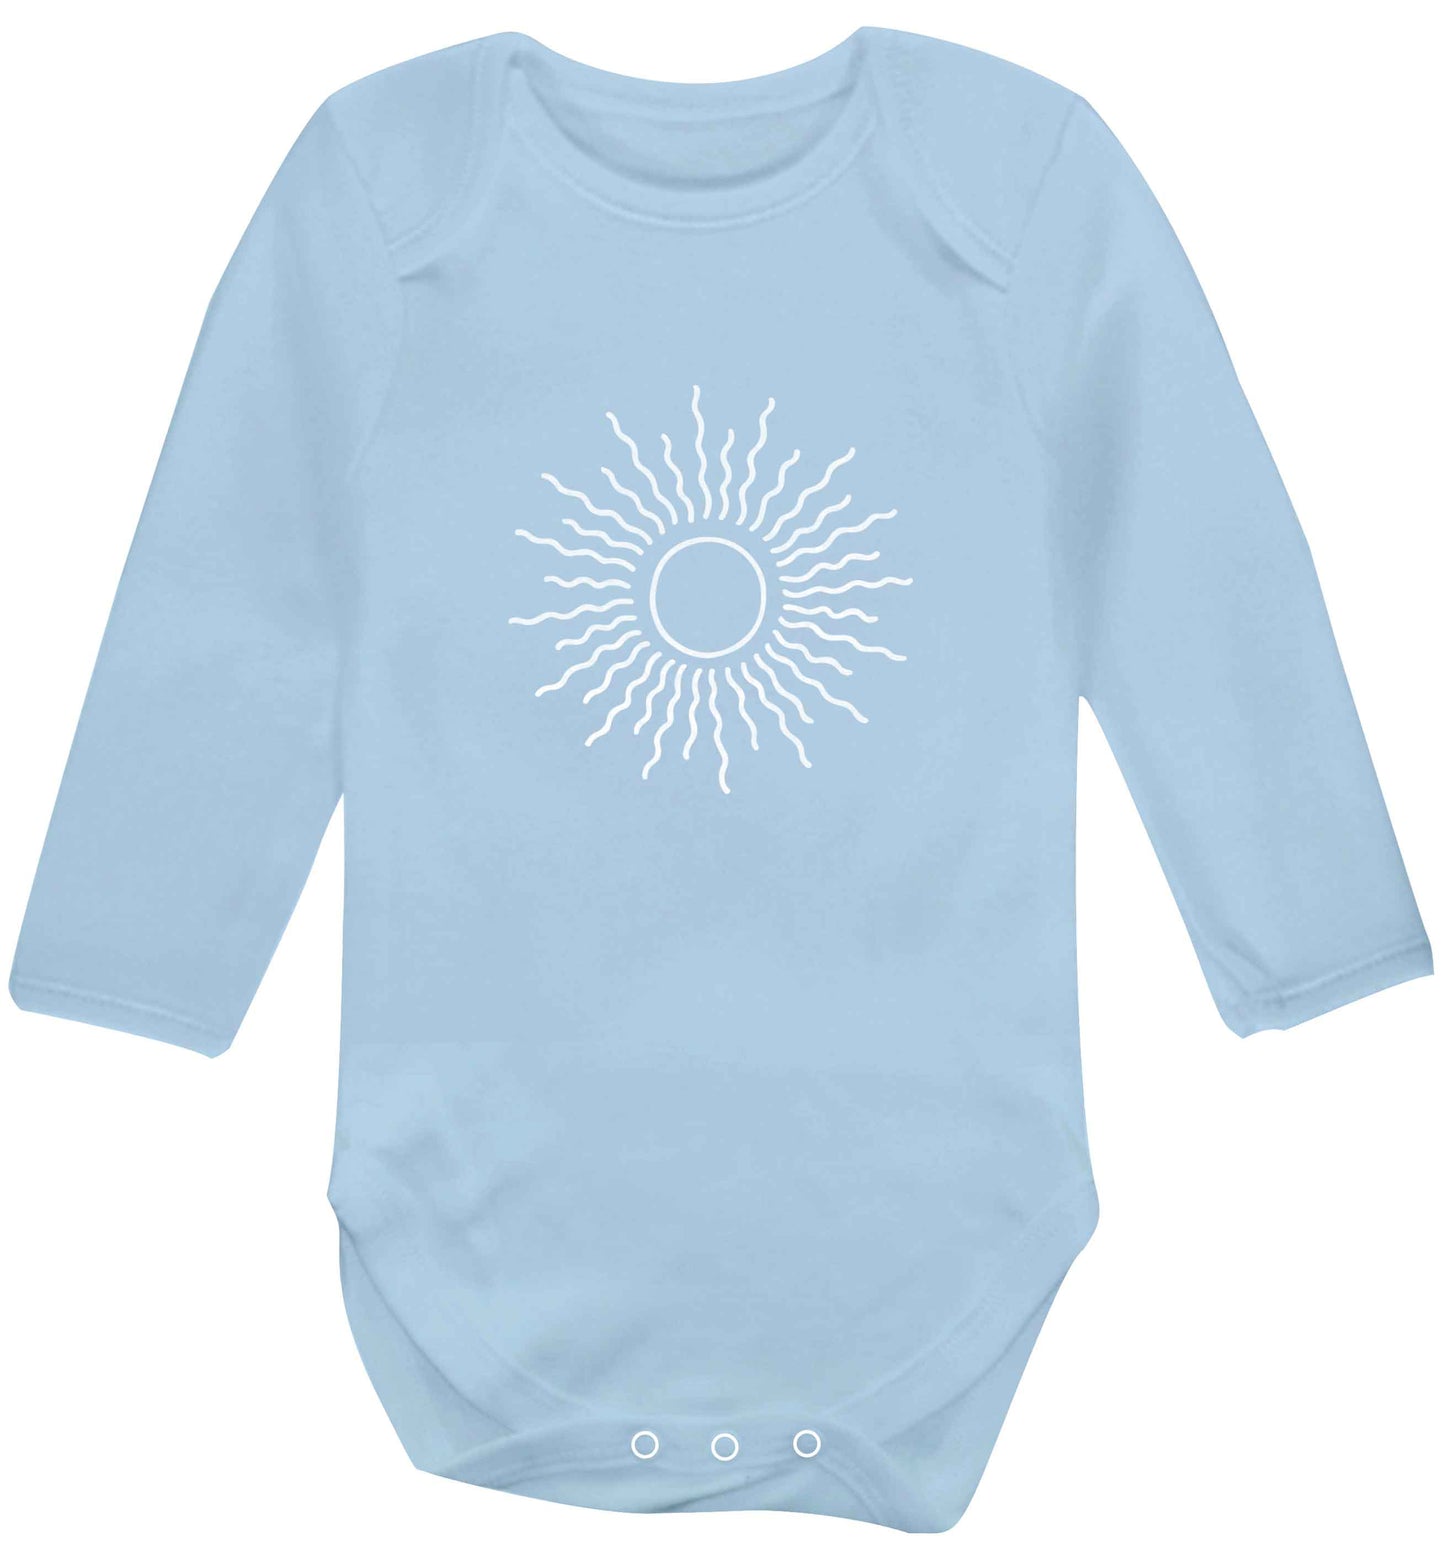 Sun illustration baby vest long sleeved pale blue 6-12 months